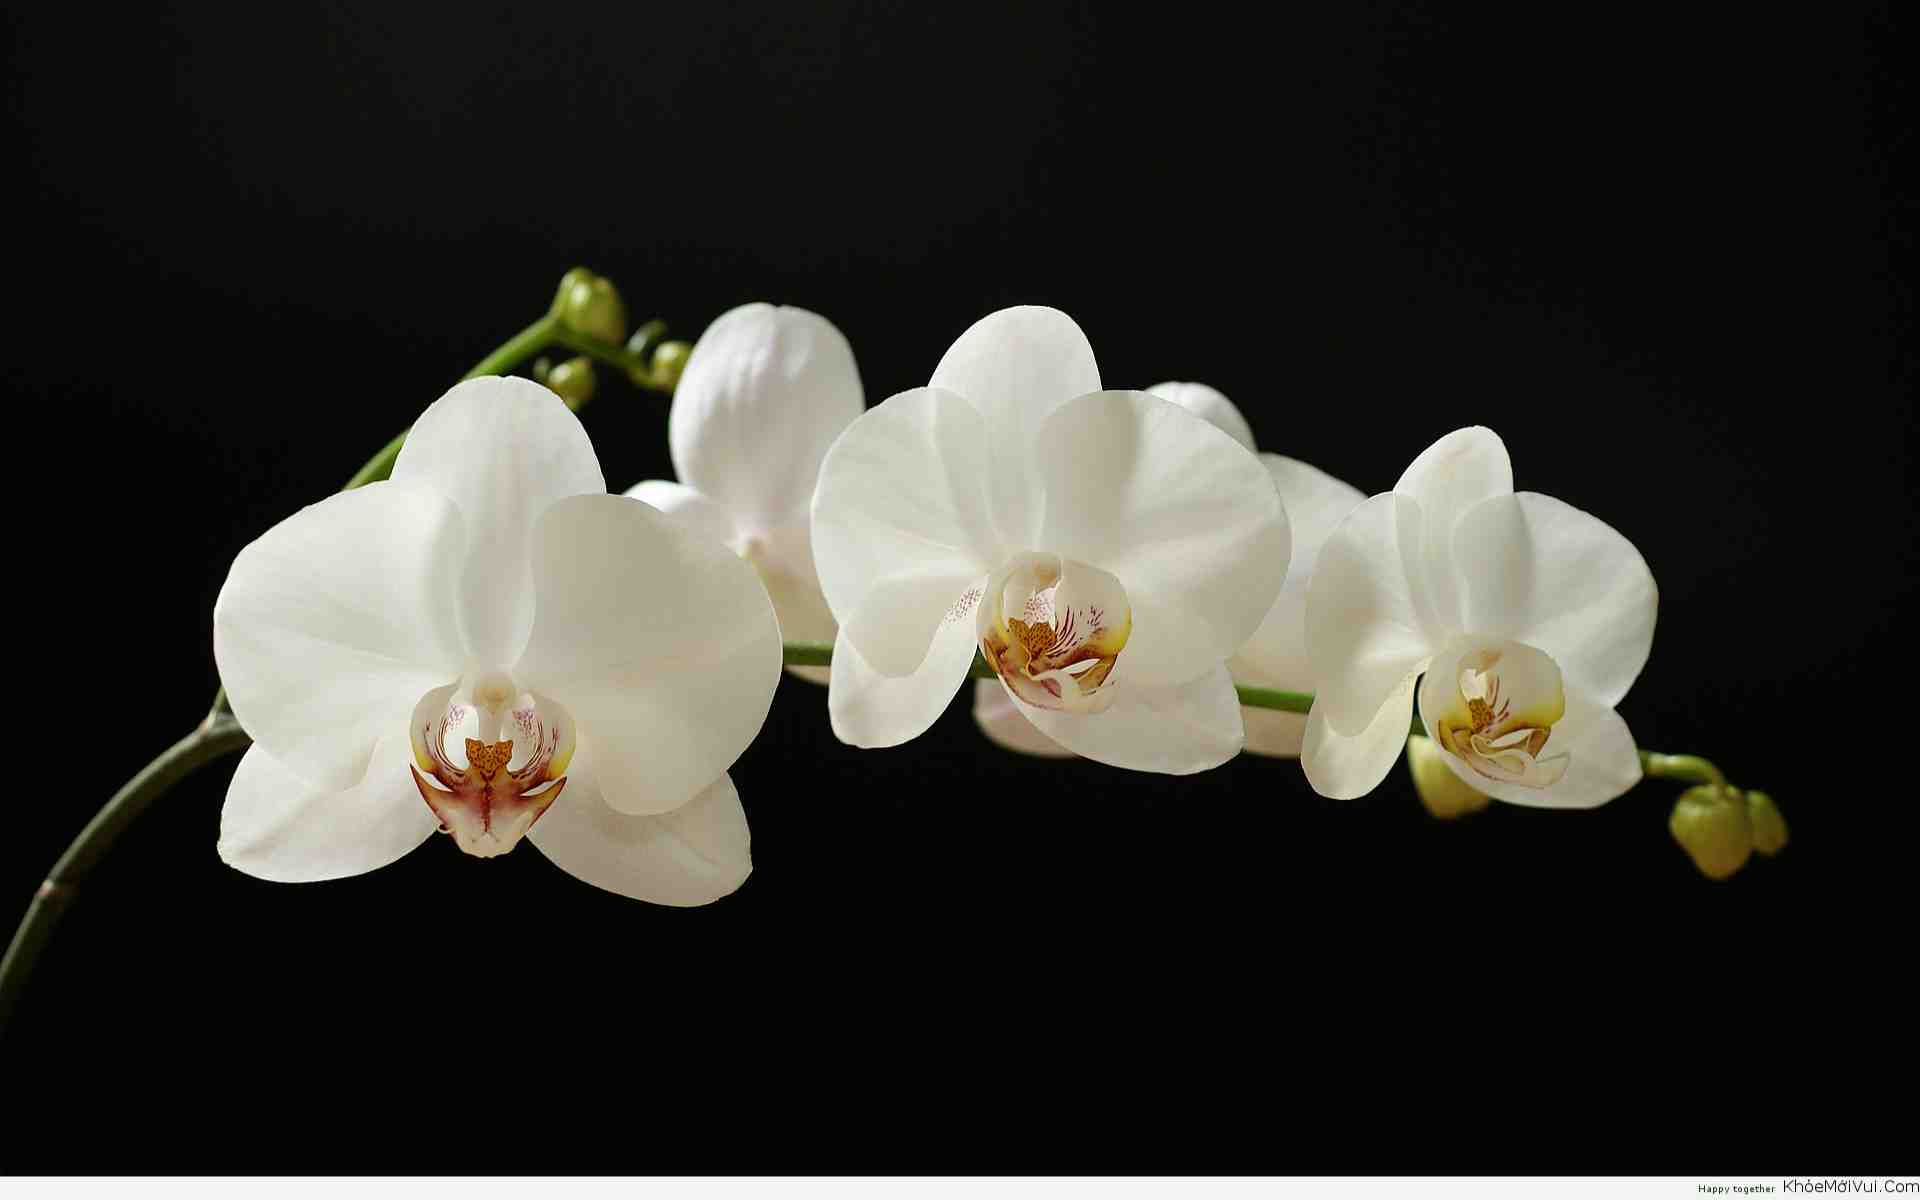 Hoa phong lan luôn là một trong những loài hoa được yêu thích nhất trong các bức ảnh kết hợp với máy tính. Bạn sẽ thấy chúng rất đẹp khi được tô điểm bằng những sắc màu rực rỡ. Hãy để chính bức ảnh này làm cho bạn cảm thấy tràn đầy sinh lực và sáng tạo.